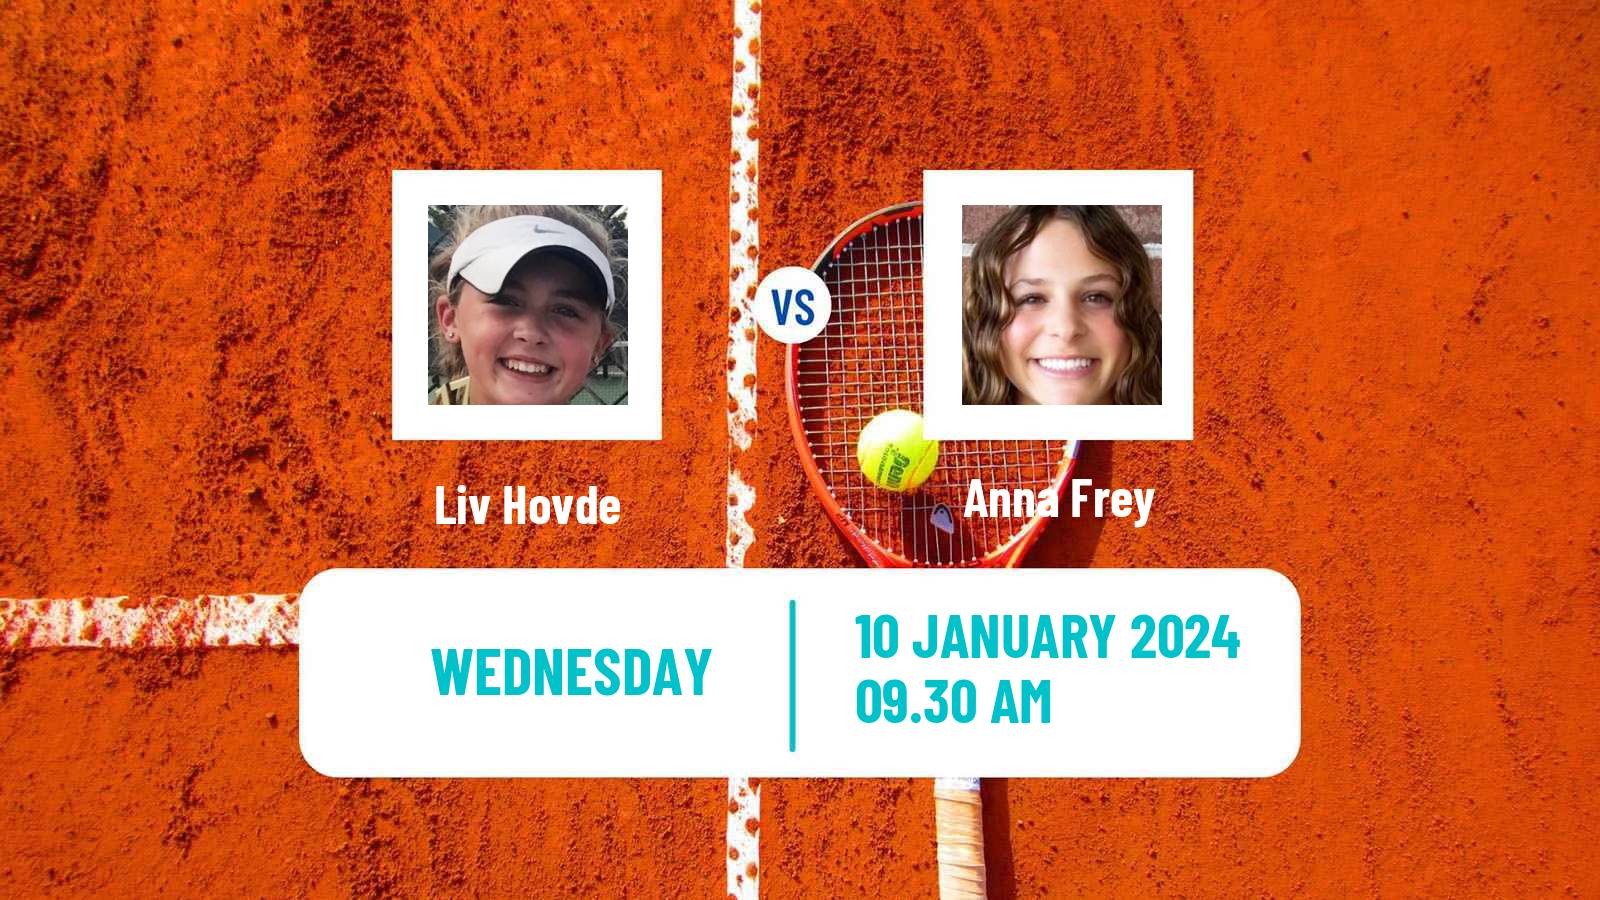 Tennis ITF W35 Loughborough Women Liv Hovde - Anna Frey